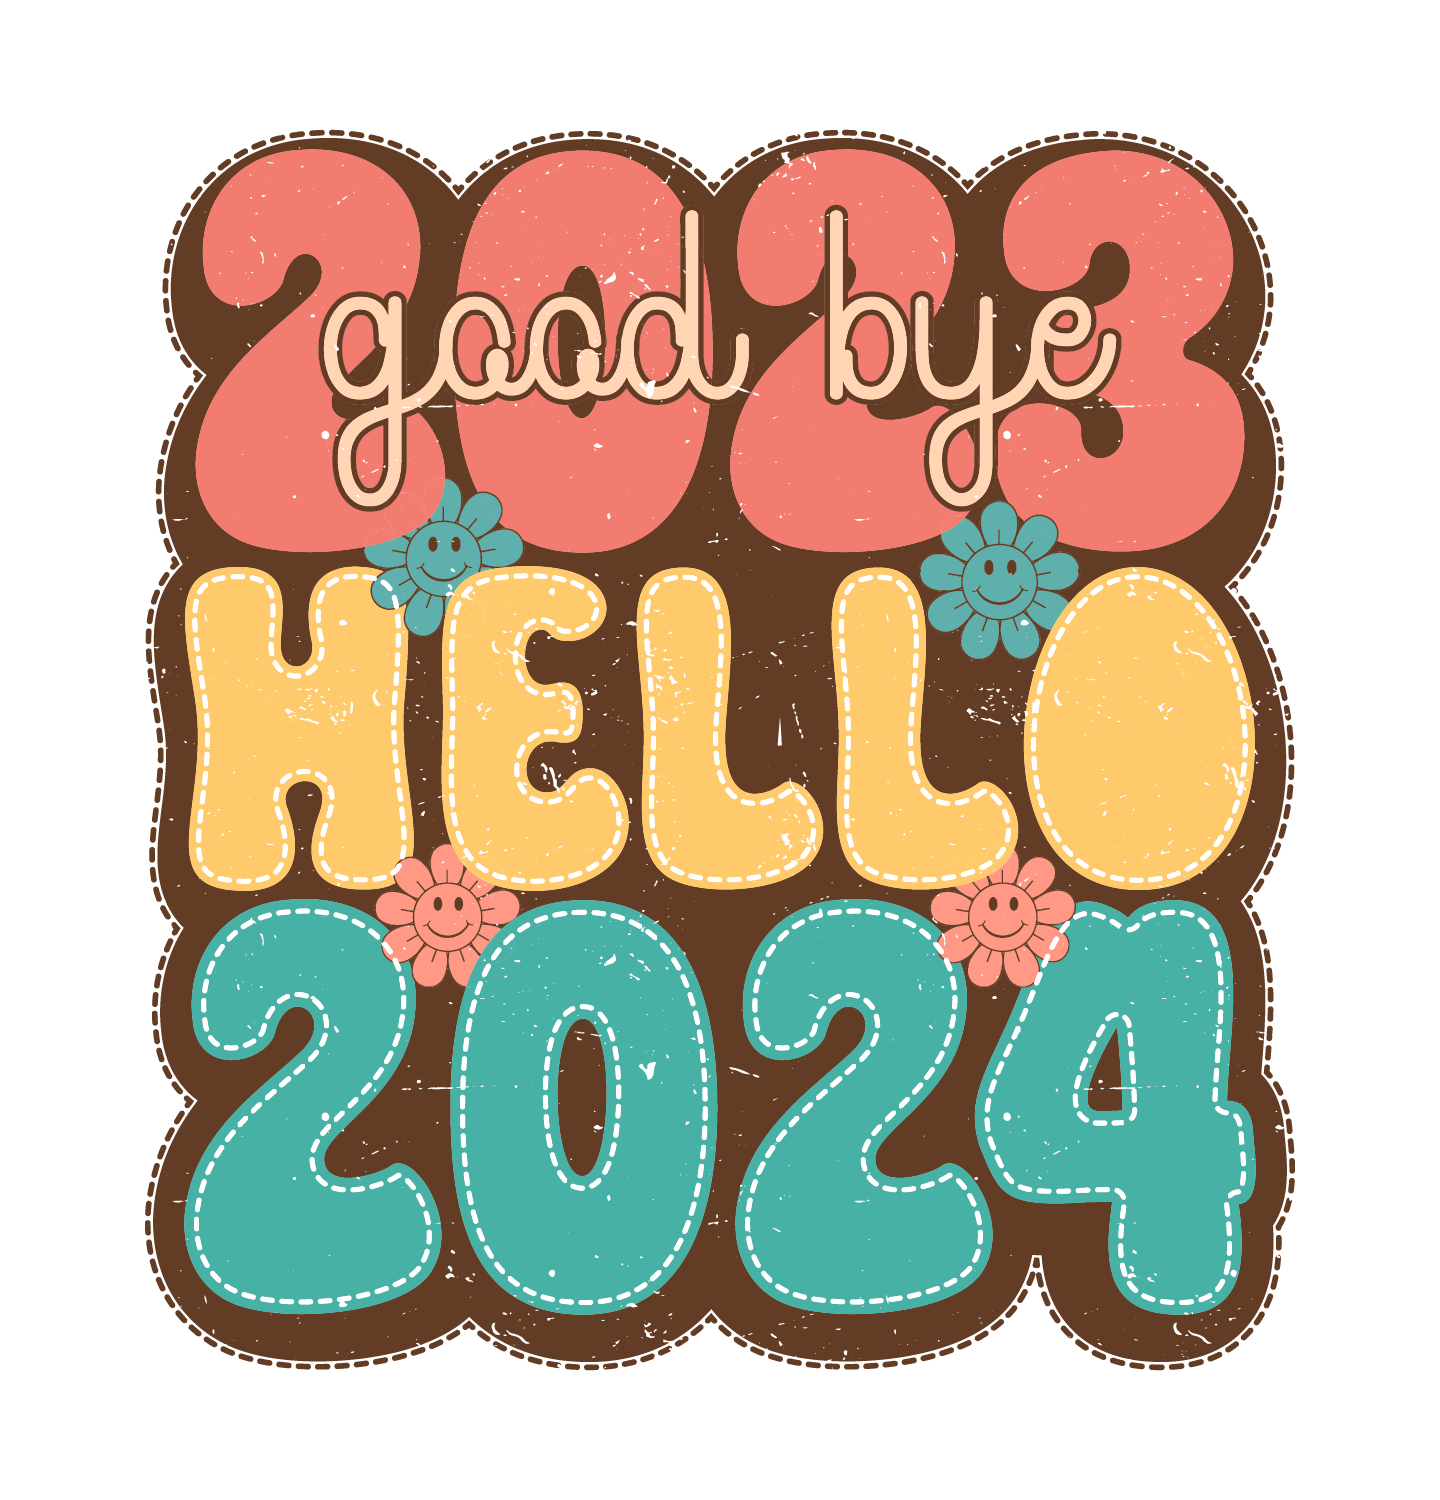 Goodbye 2023 Welcome 2024 